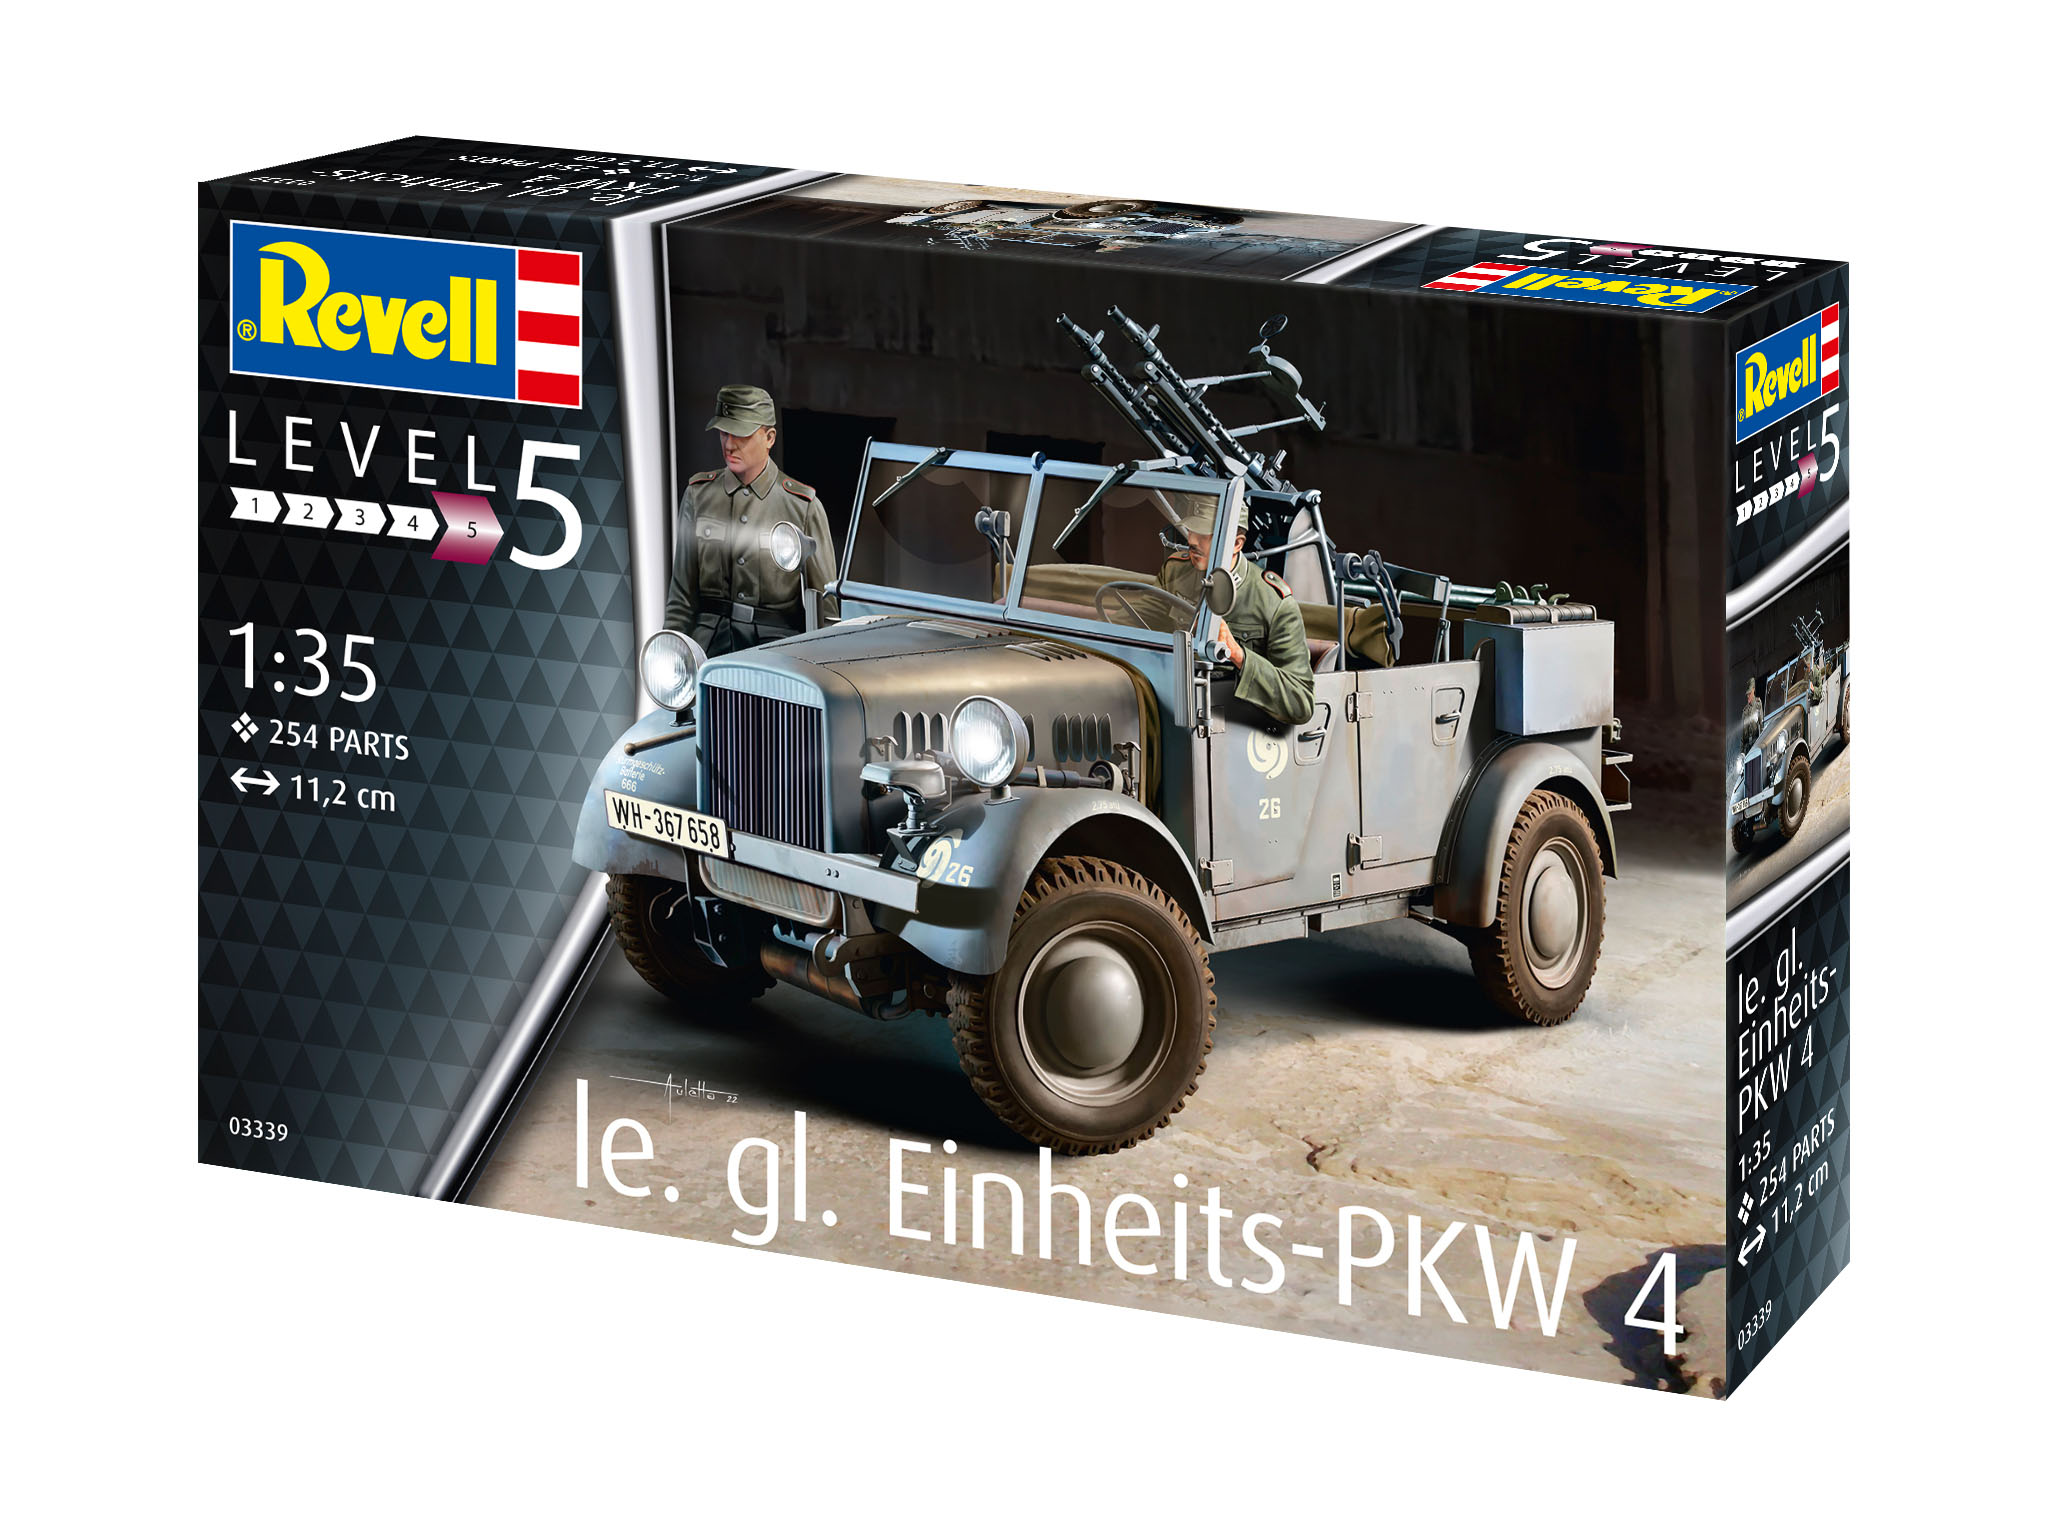 Einheits-PKW Kfz.4 - 03339